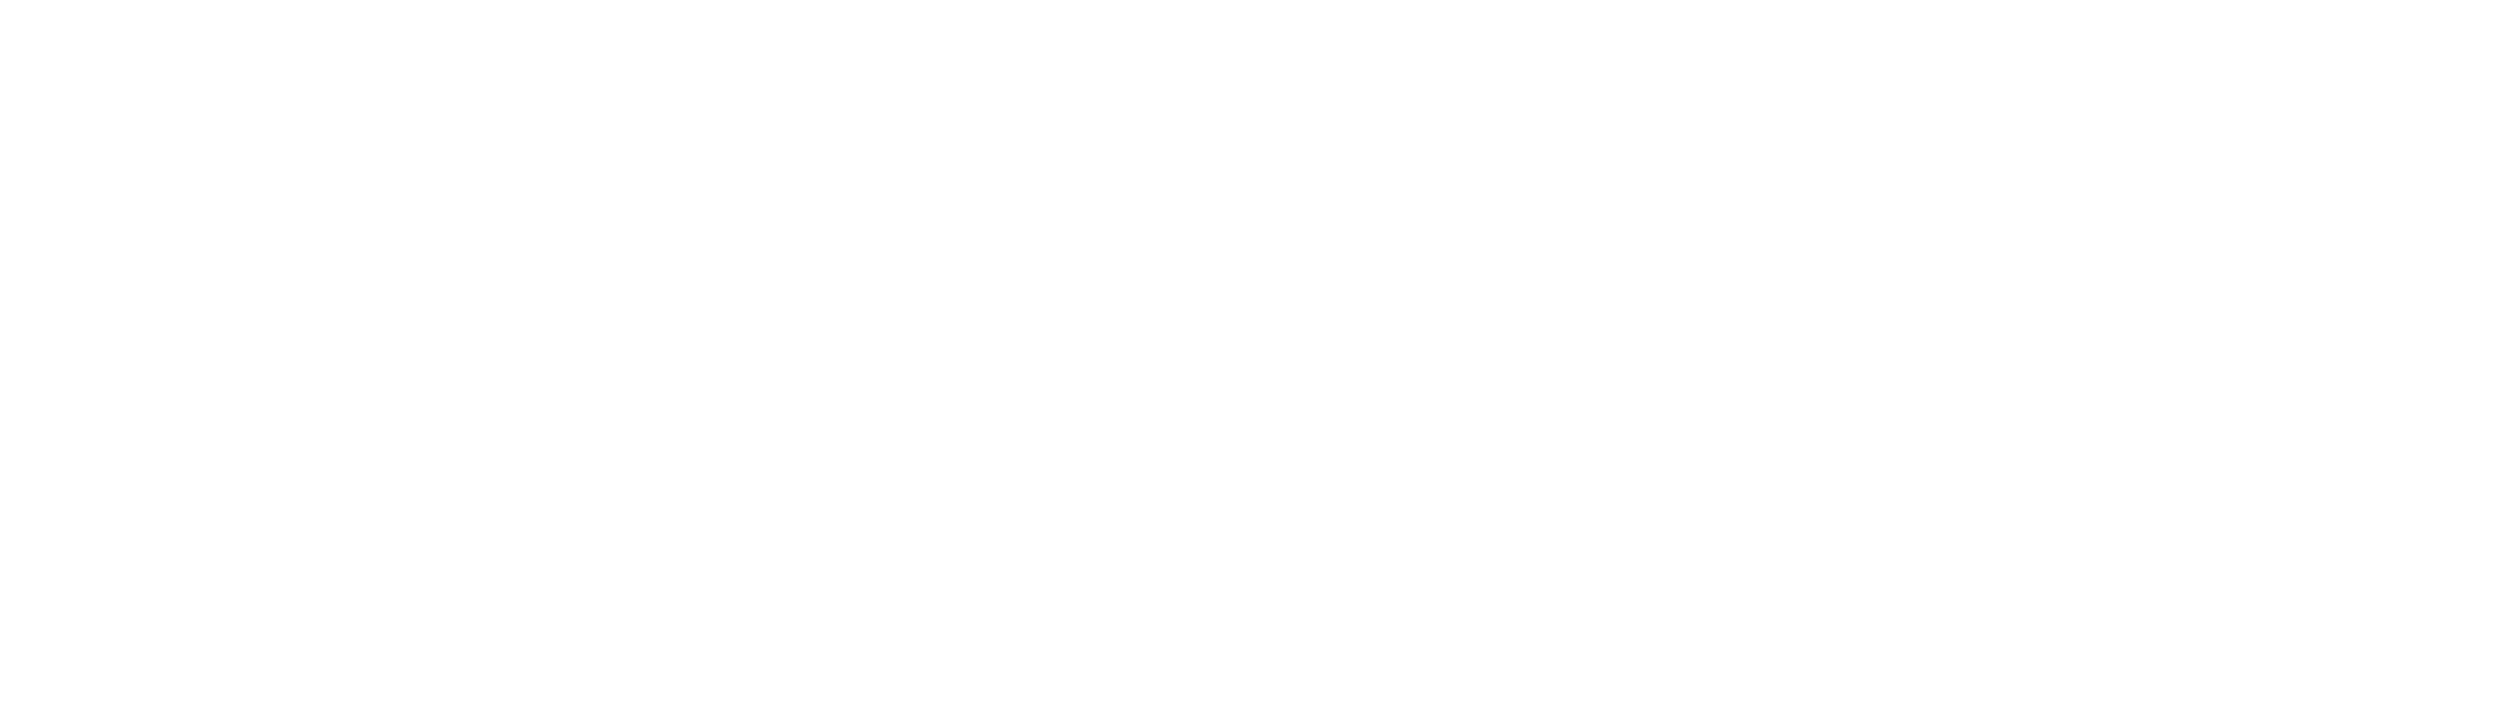 Kodestarters